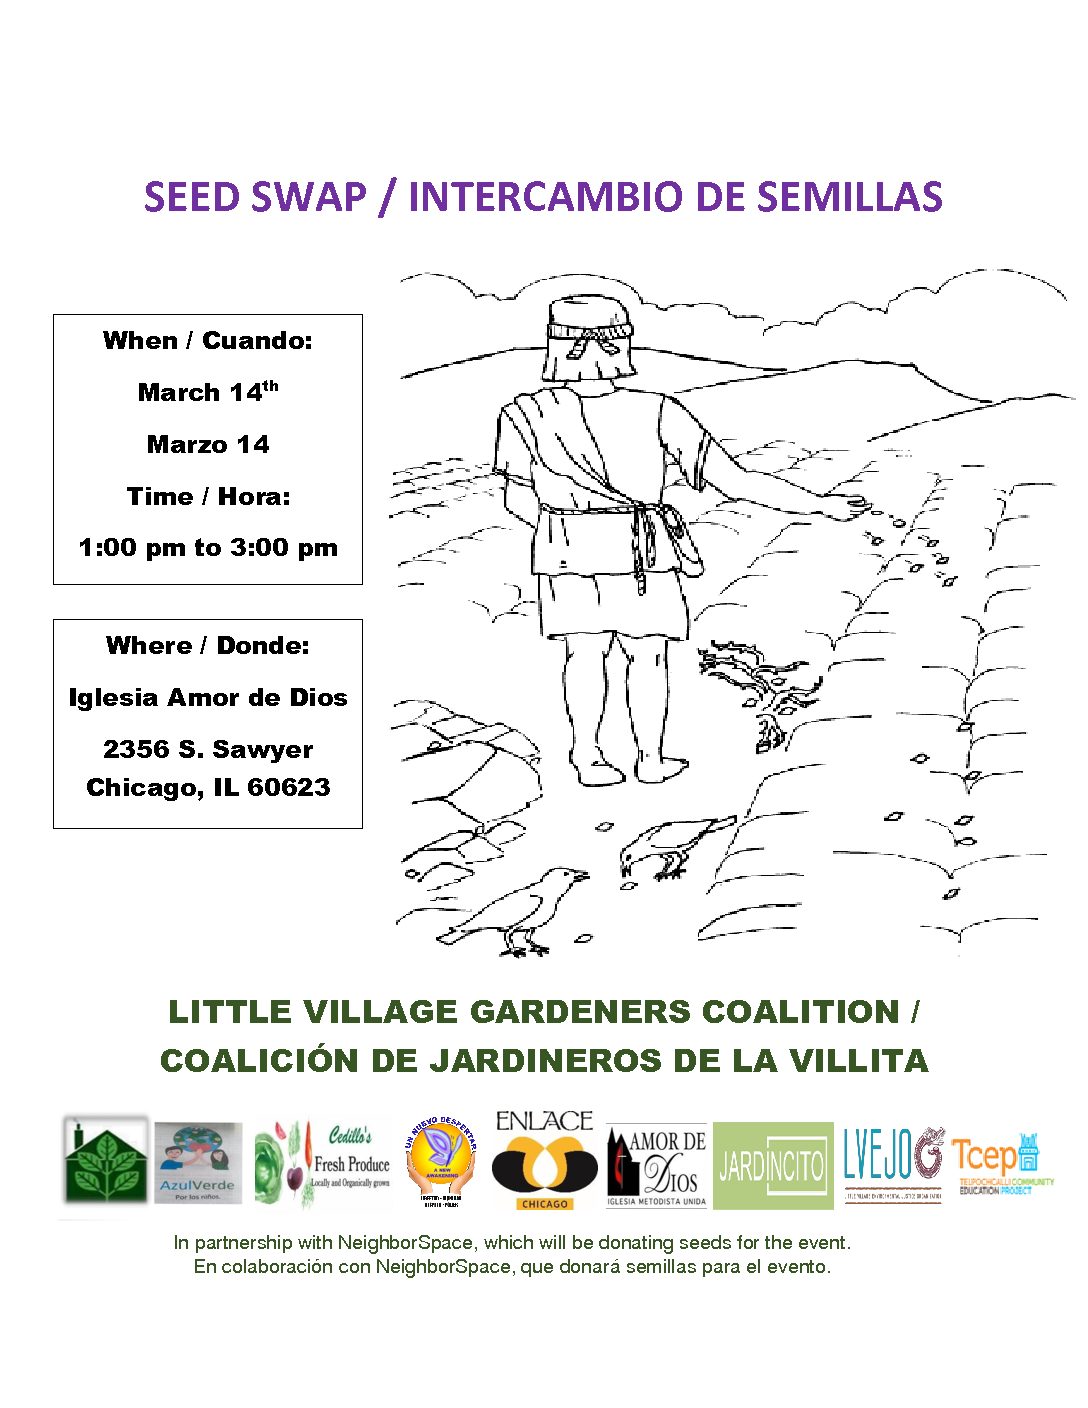 Little Village Gardeners Coalition Seed Swap / Coalicion de jardineros de la Villita Intercambio de Semillas